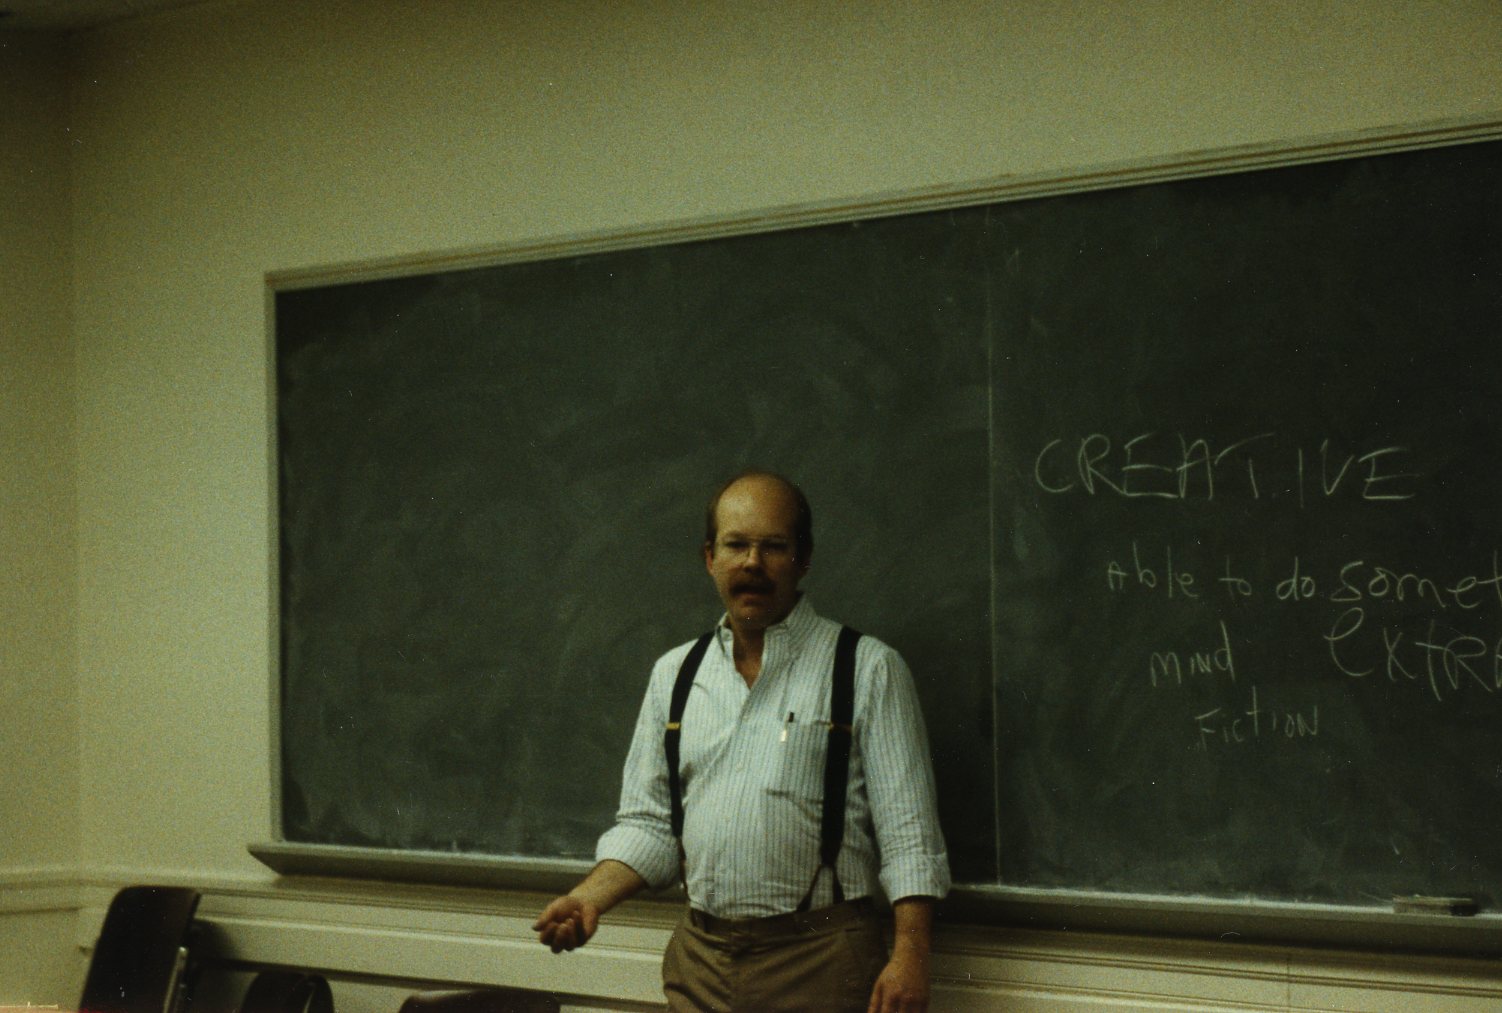 Dan Hunter standing in front of a chalkboard